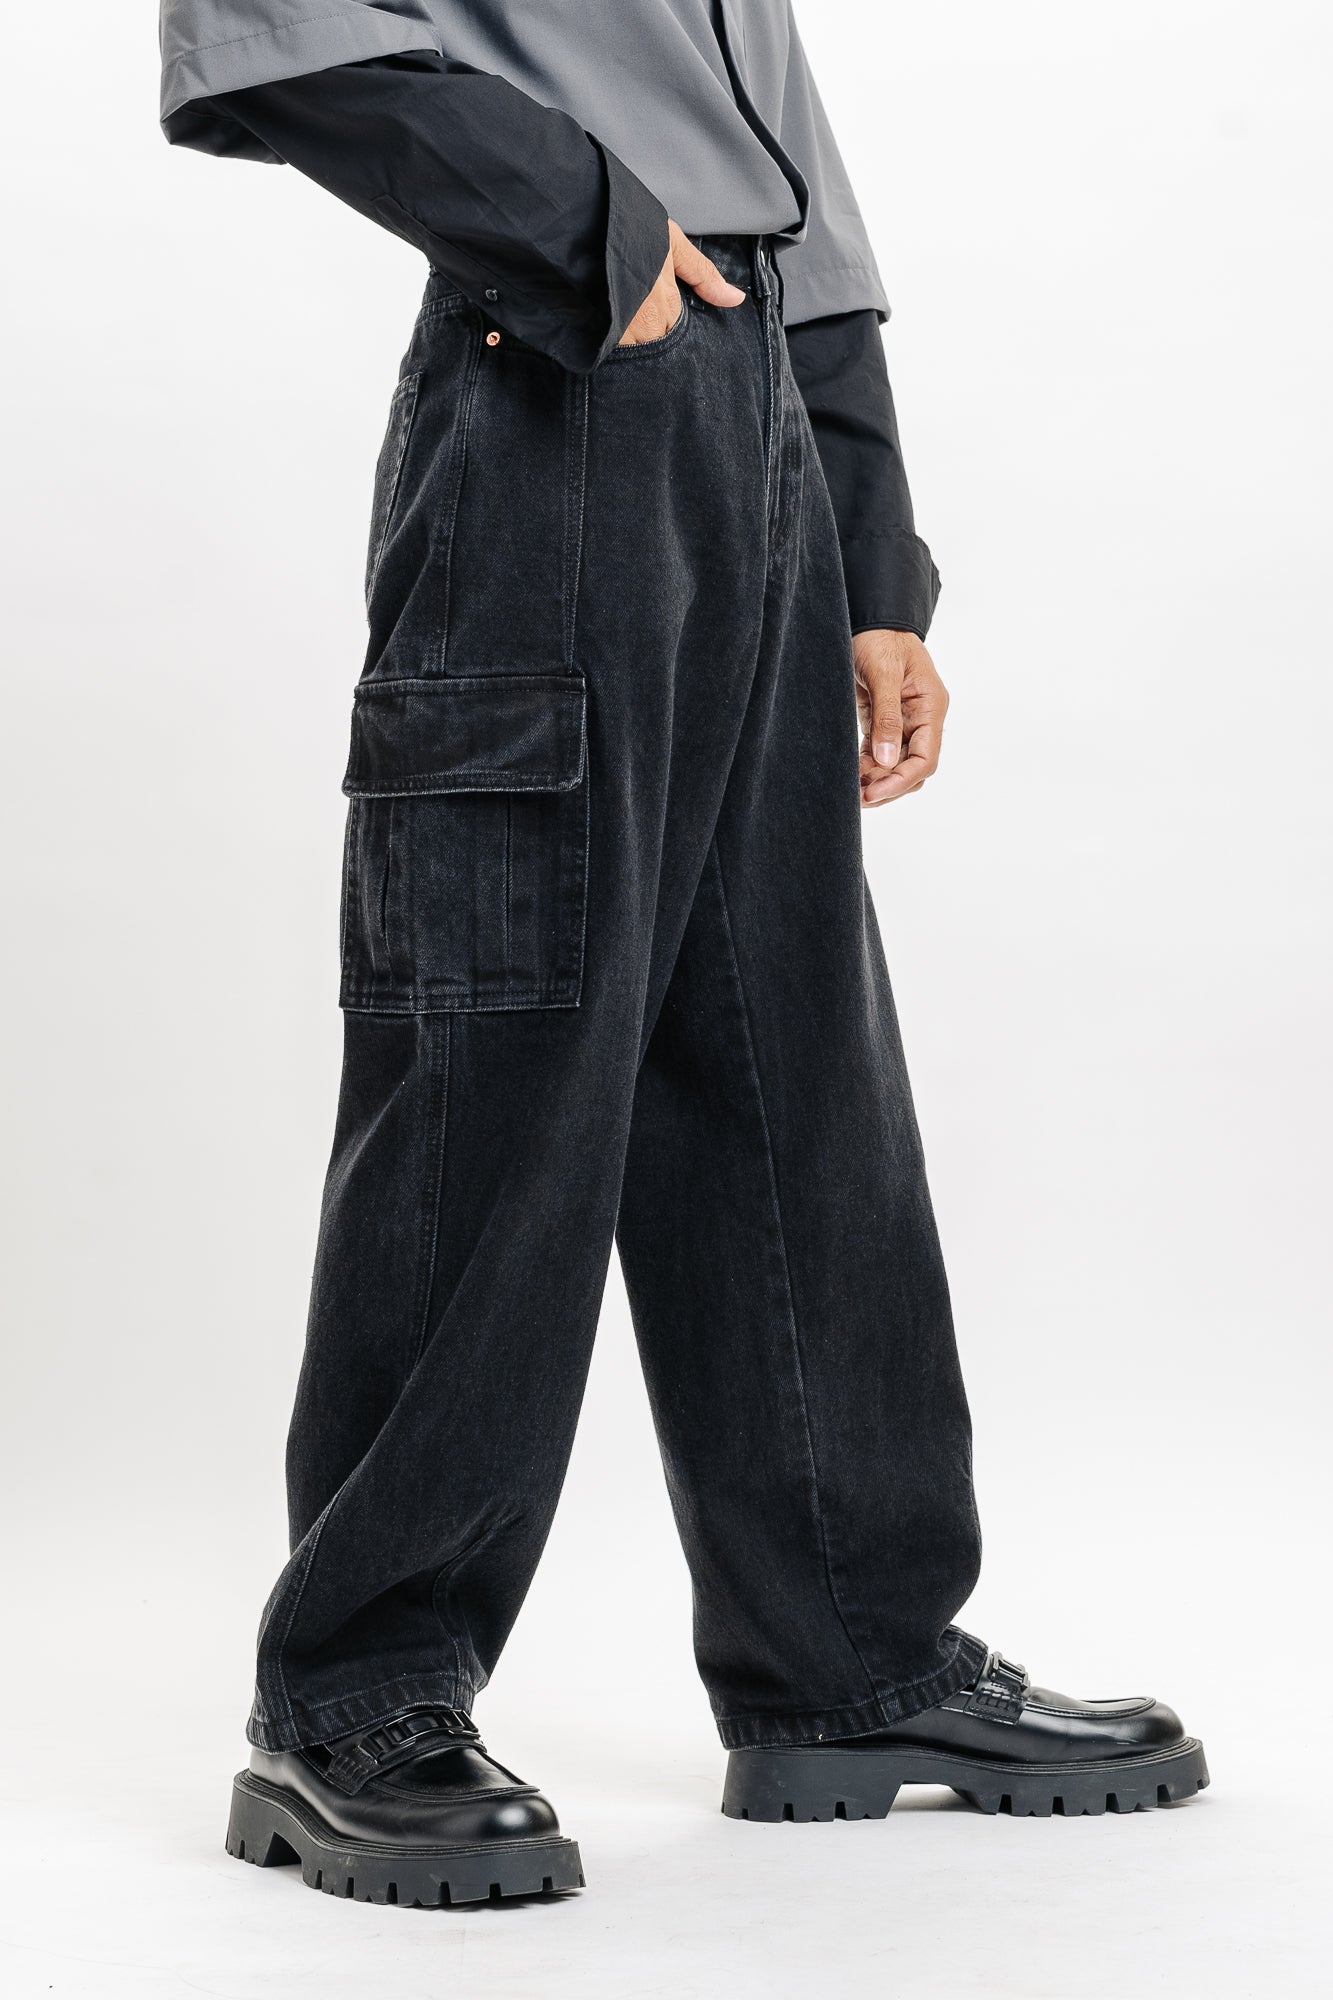 XYXIONGMAO Men's Techwear Pants Japanese Streetwear Goth Black Cargo Pants  Men Jogger Fashion Tripp Cyberpunk Pants, Black, Small : Amazon.co.uk:  Fashion